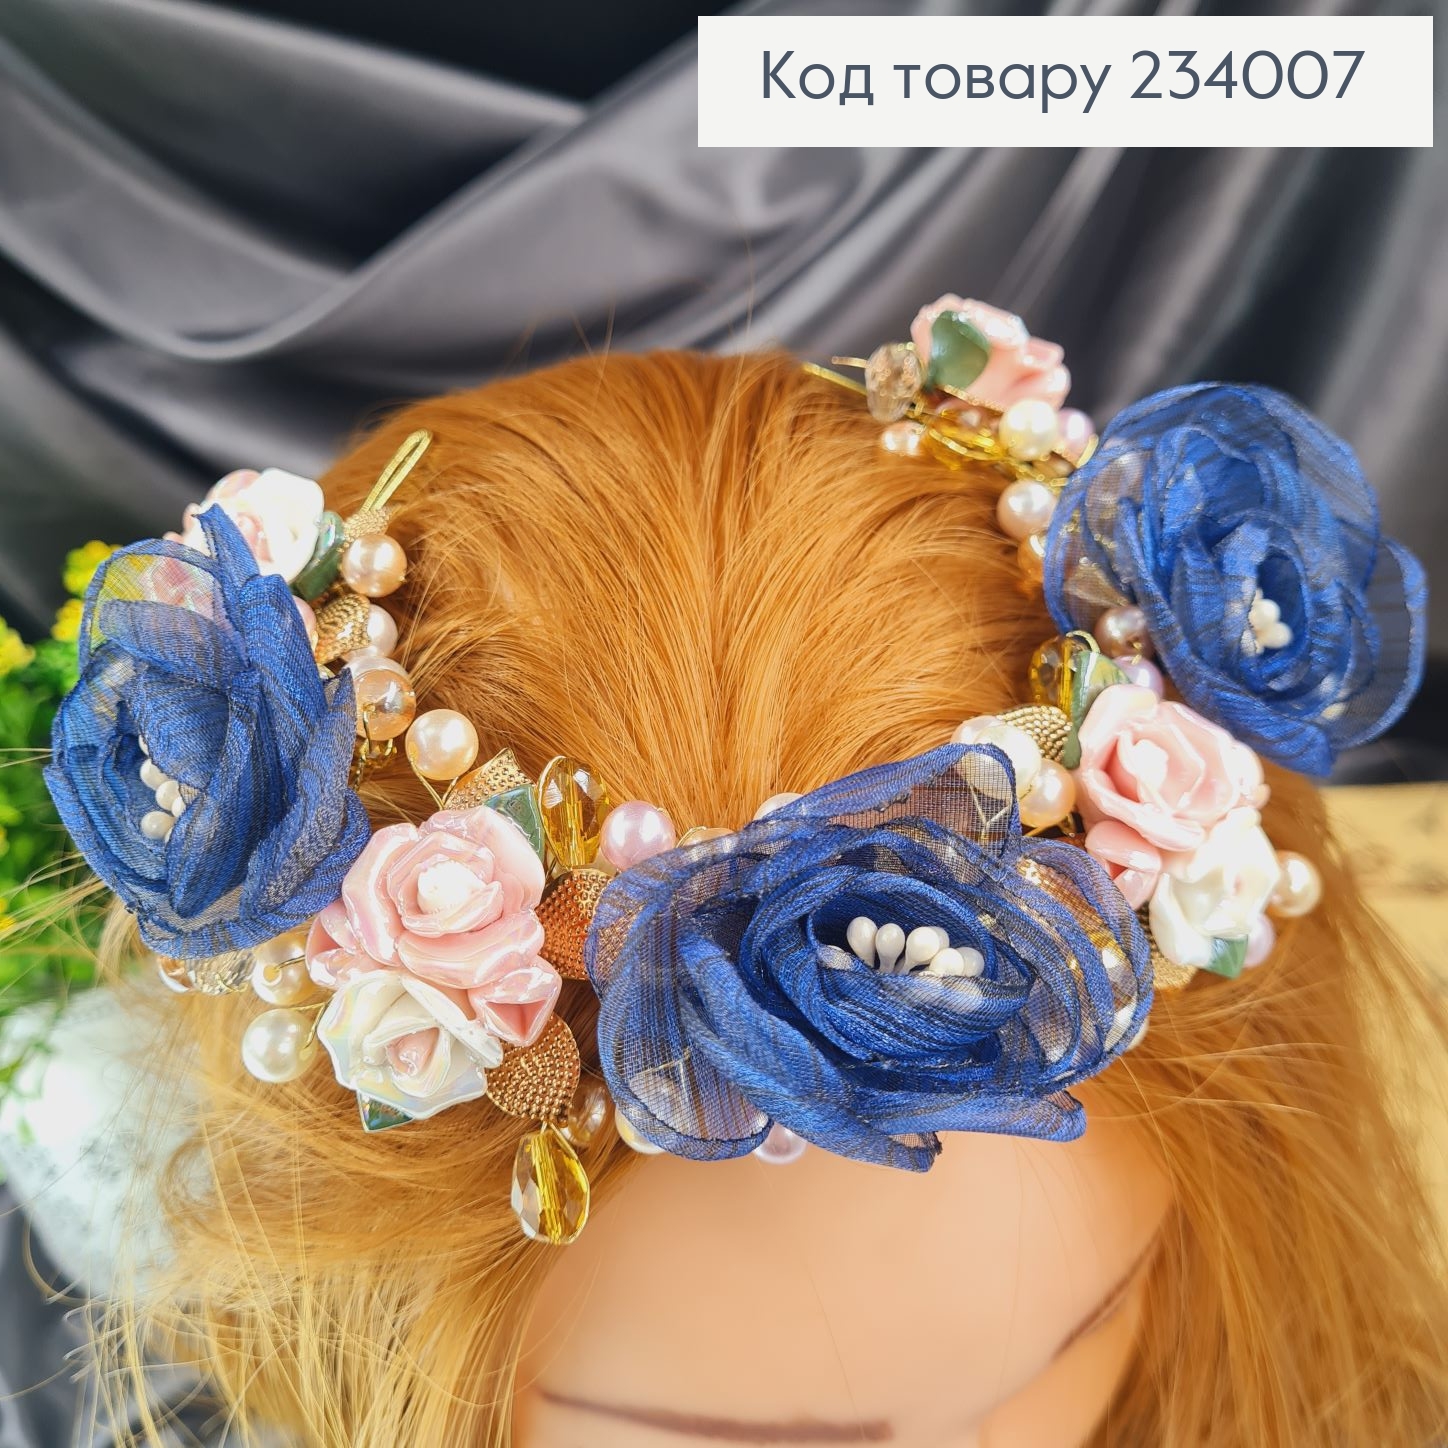 Гілочка  в волосся ручної роботи з синіми квітами 234007 фото 2